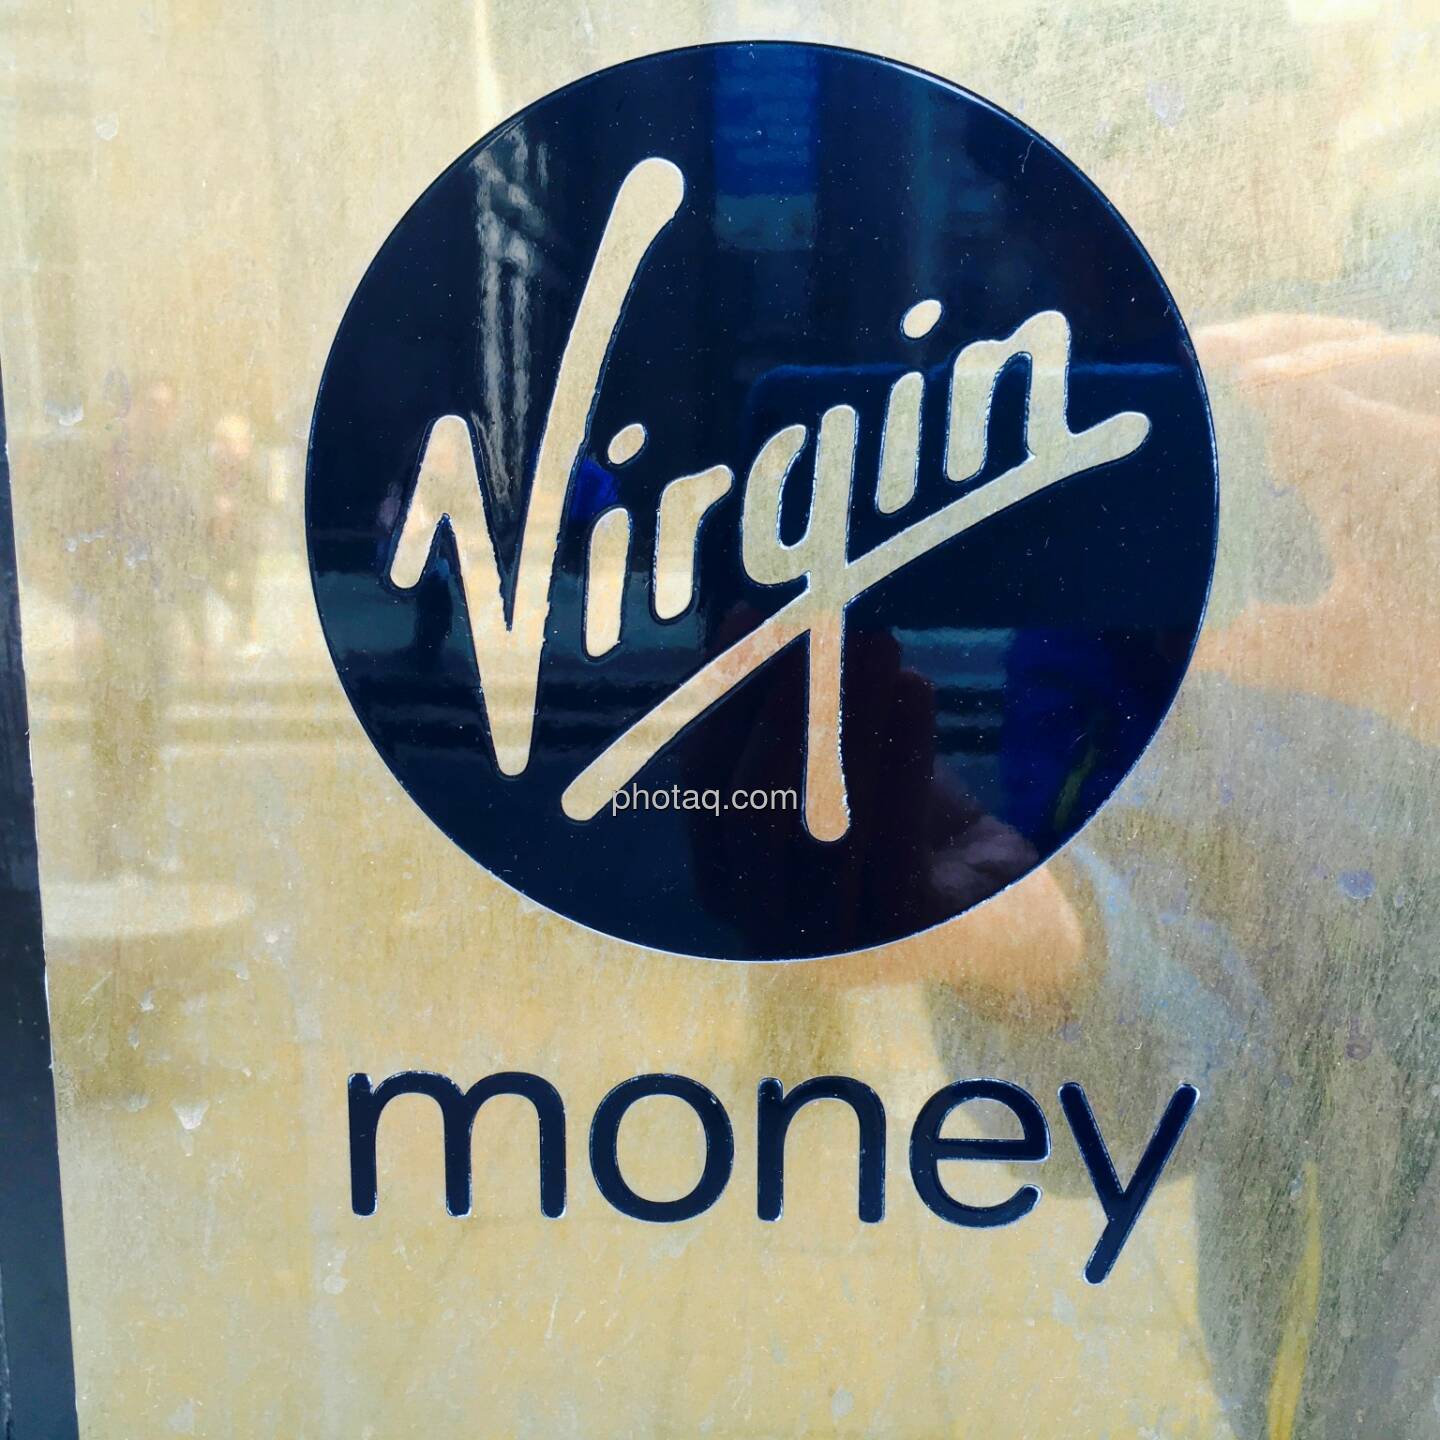 Virgin money, Geld